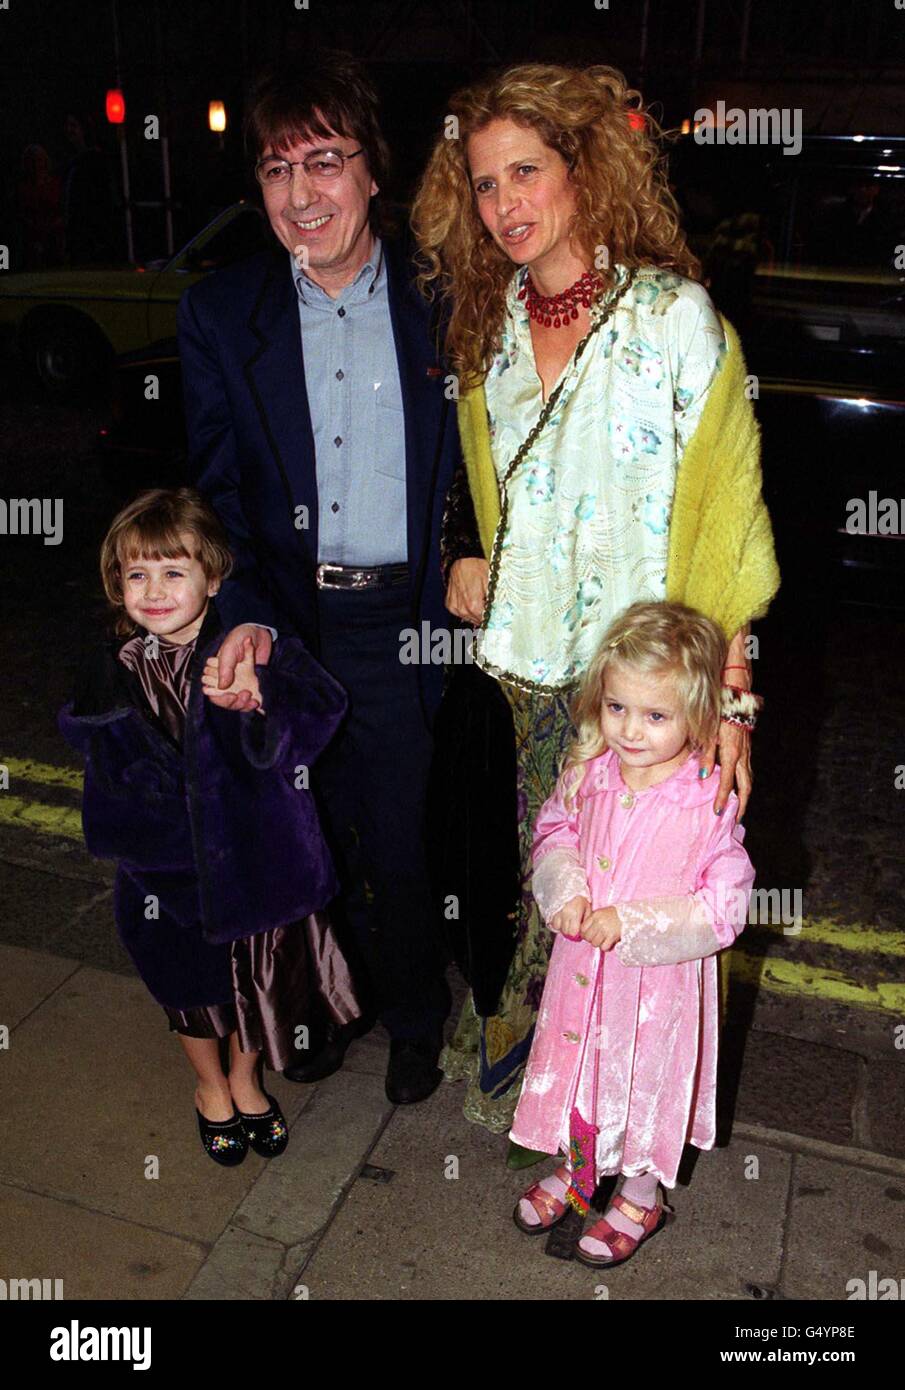 L'ancien guitariste Rolling Stones Bill Wyman avec sa femme Suzanne Accosta et leurs deux filles, arrivant à la première du film Gala du Miracle Maker, au cinéma Curzon à Londres. Banque D'Images